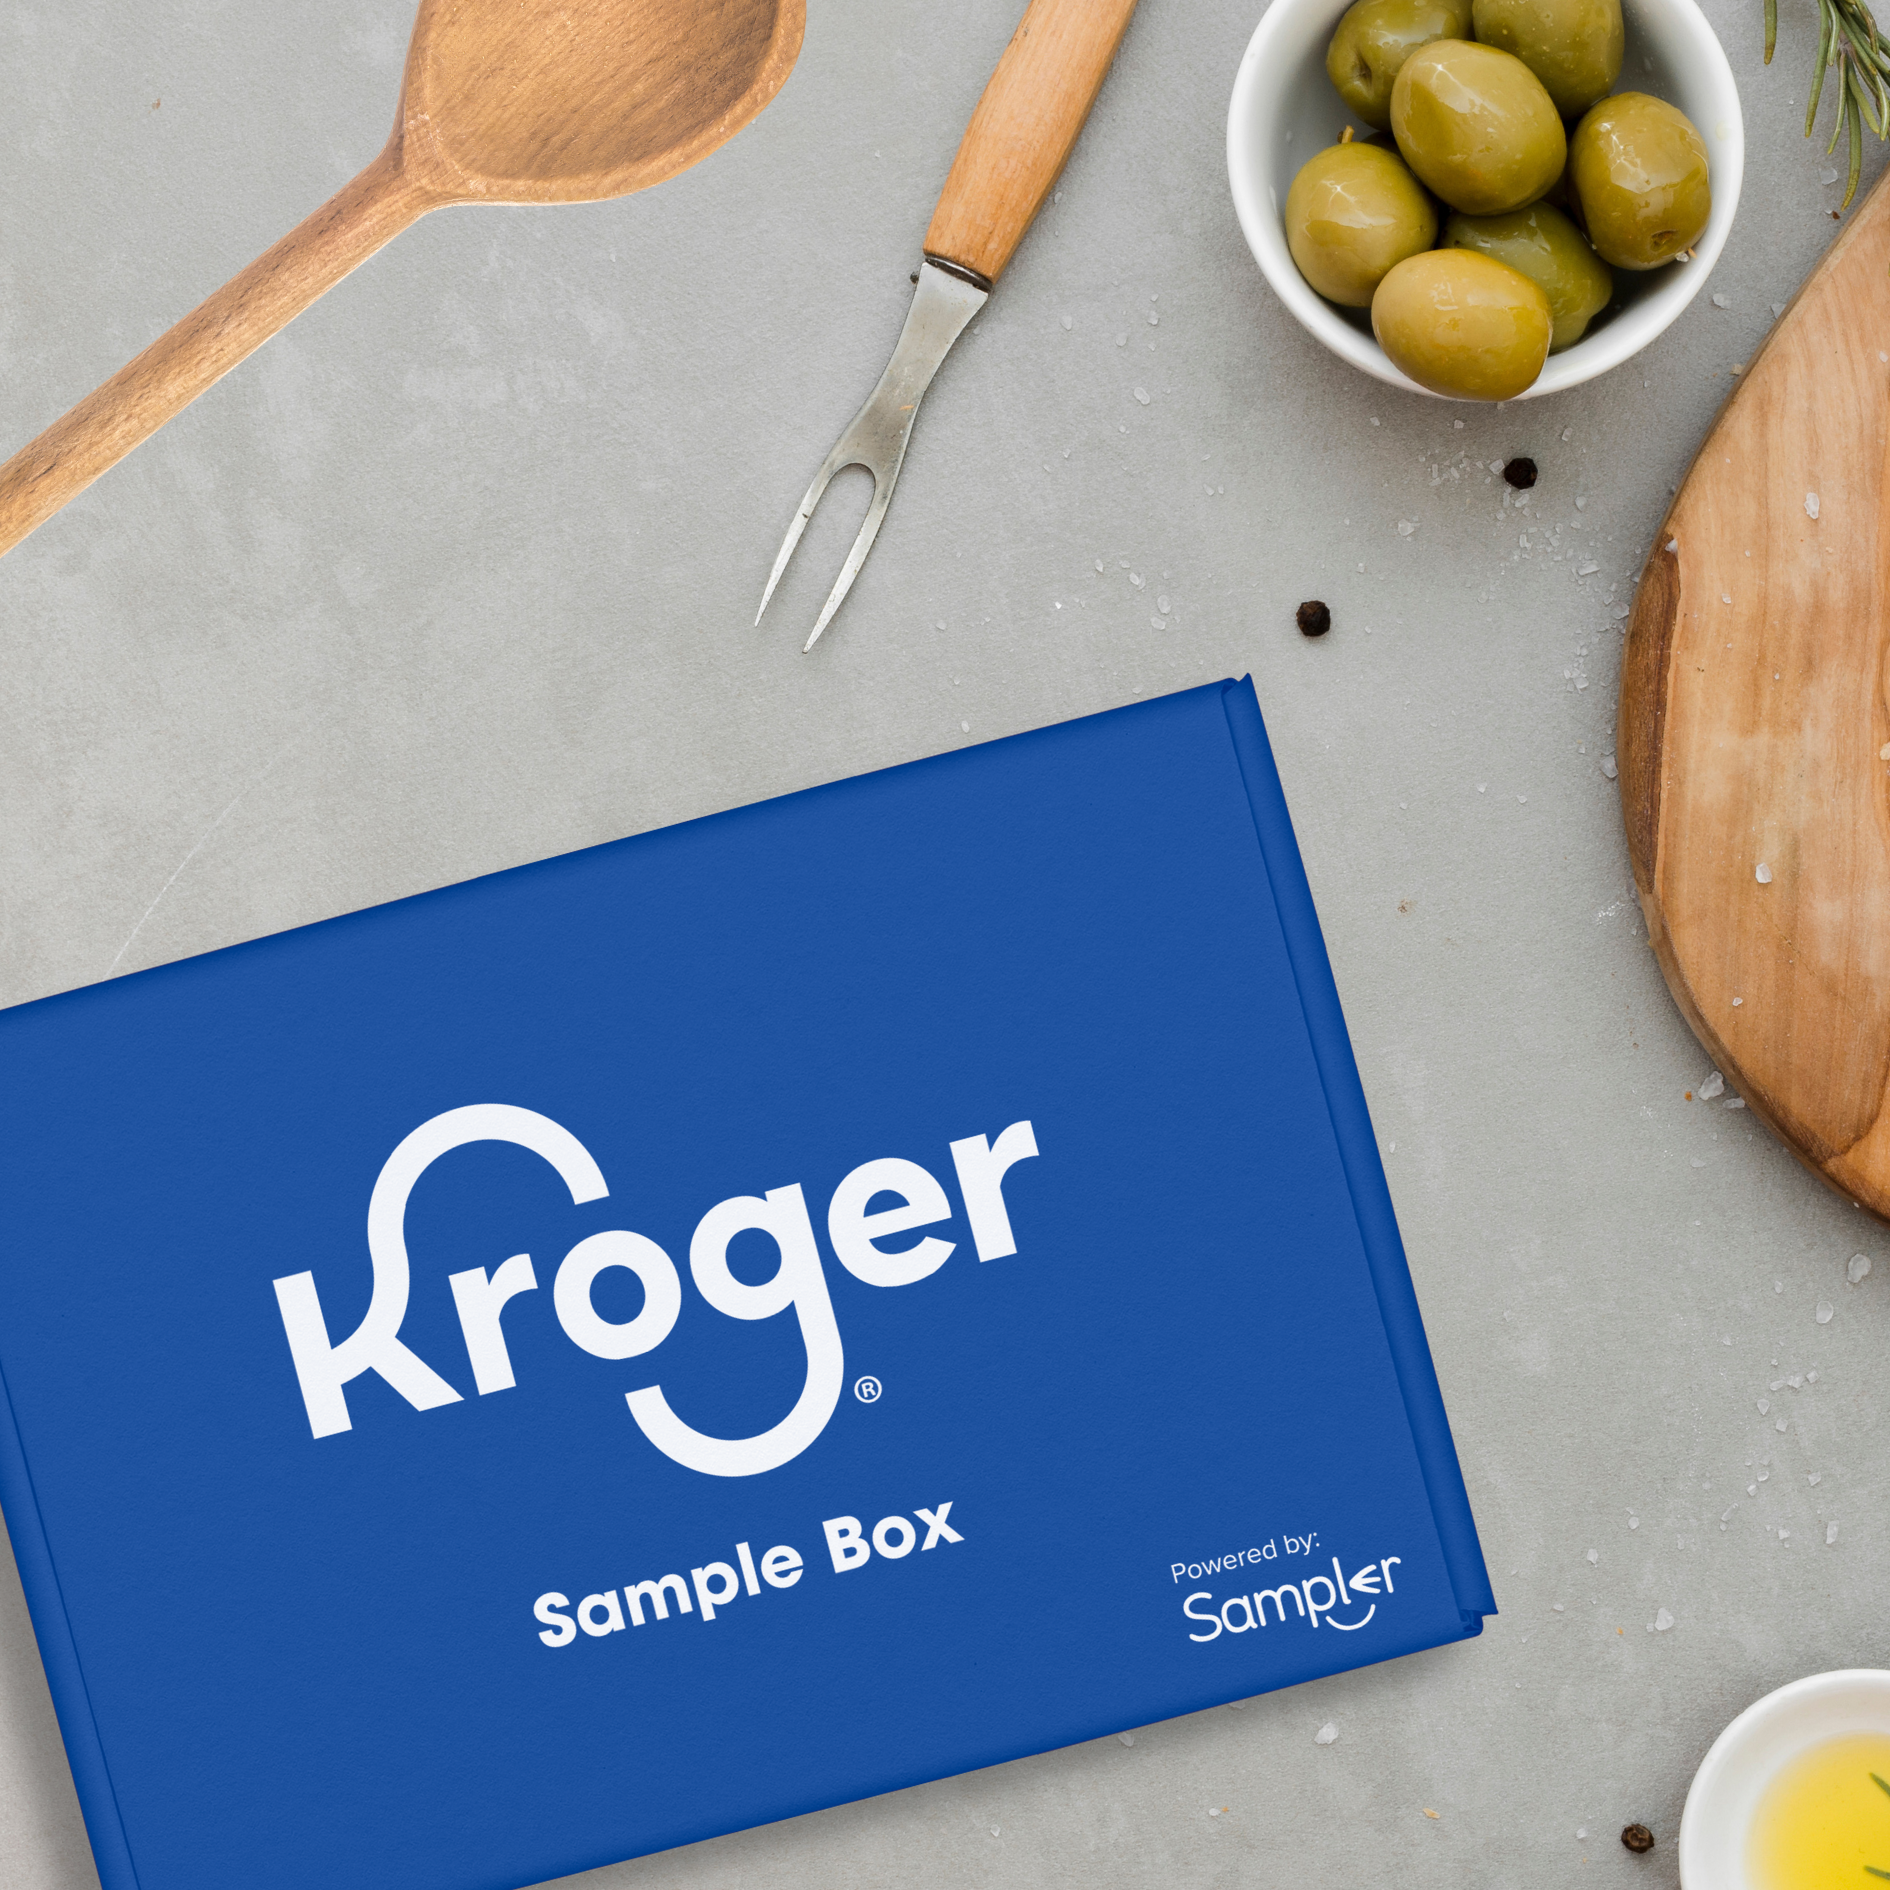 NEW FREE Kroger Sample Box From Sampler